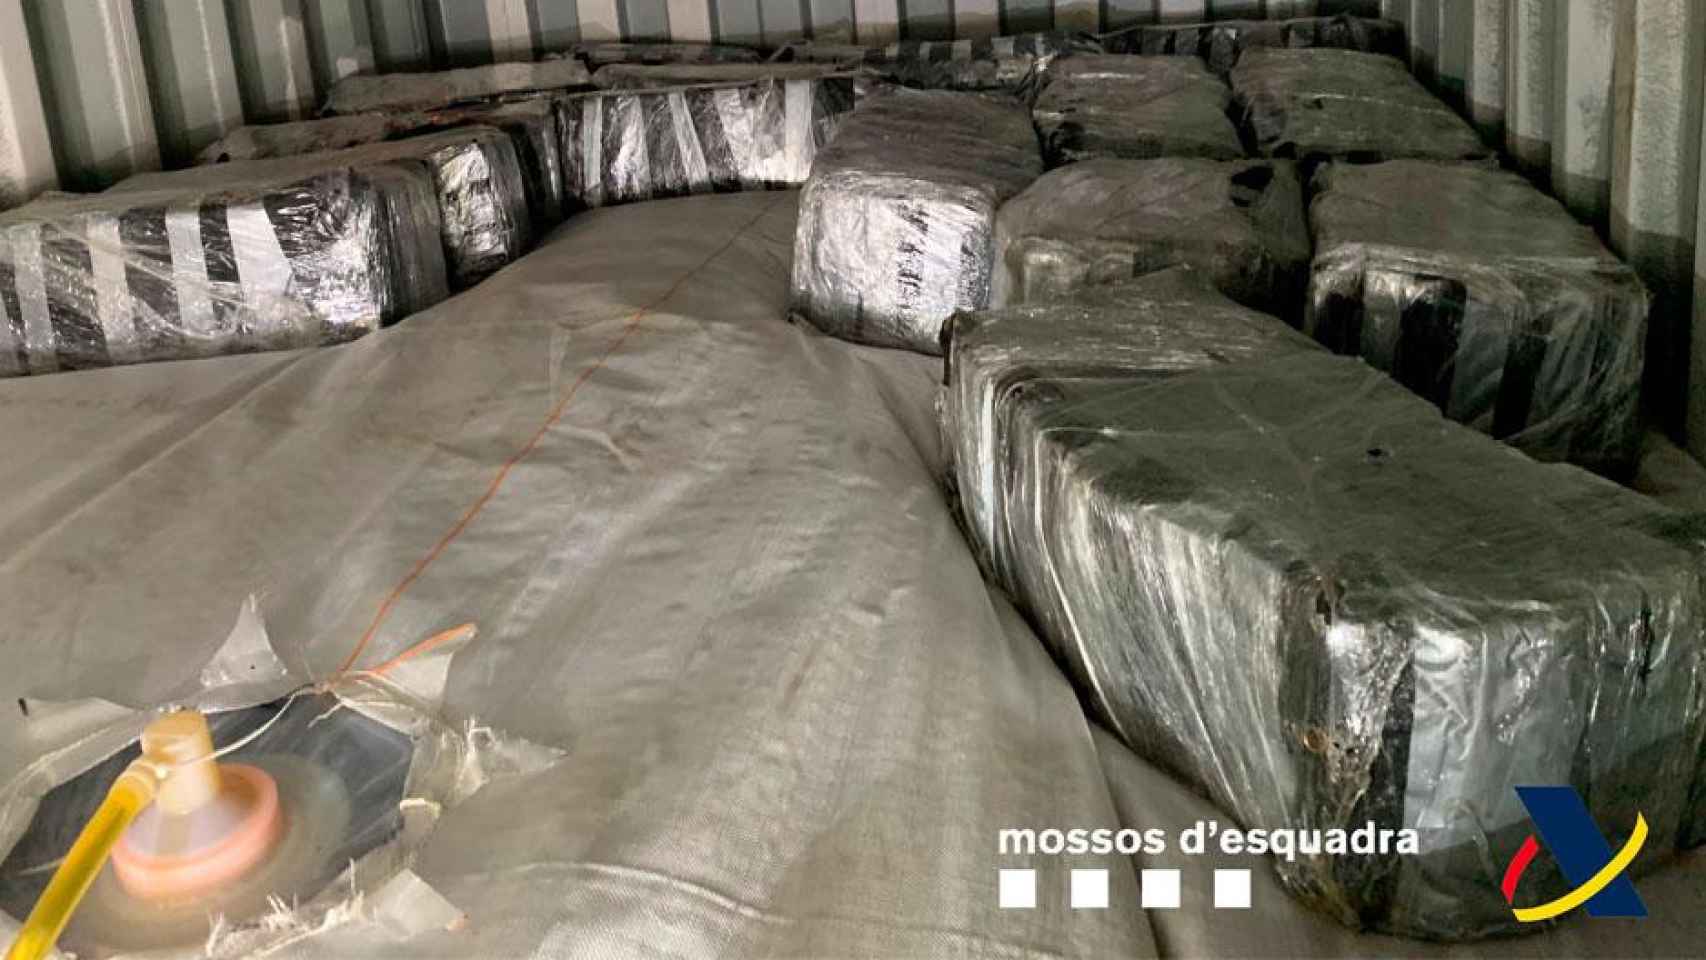 Incautan 500 kilos de cocaína en el Puerto de Barcelona / MOSSOS D'ESQUADRA